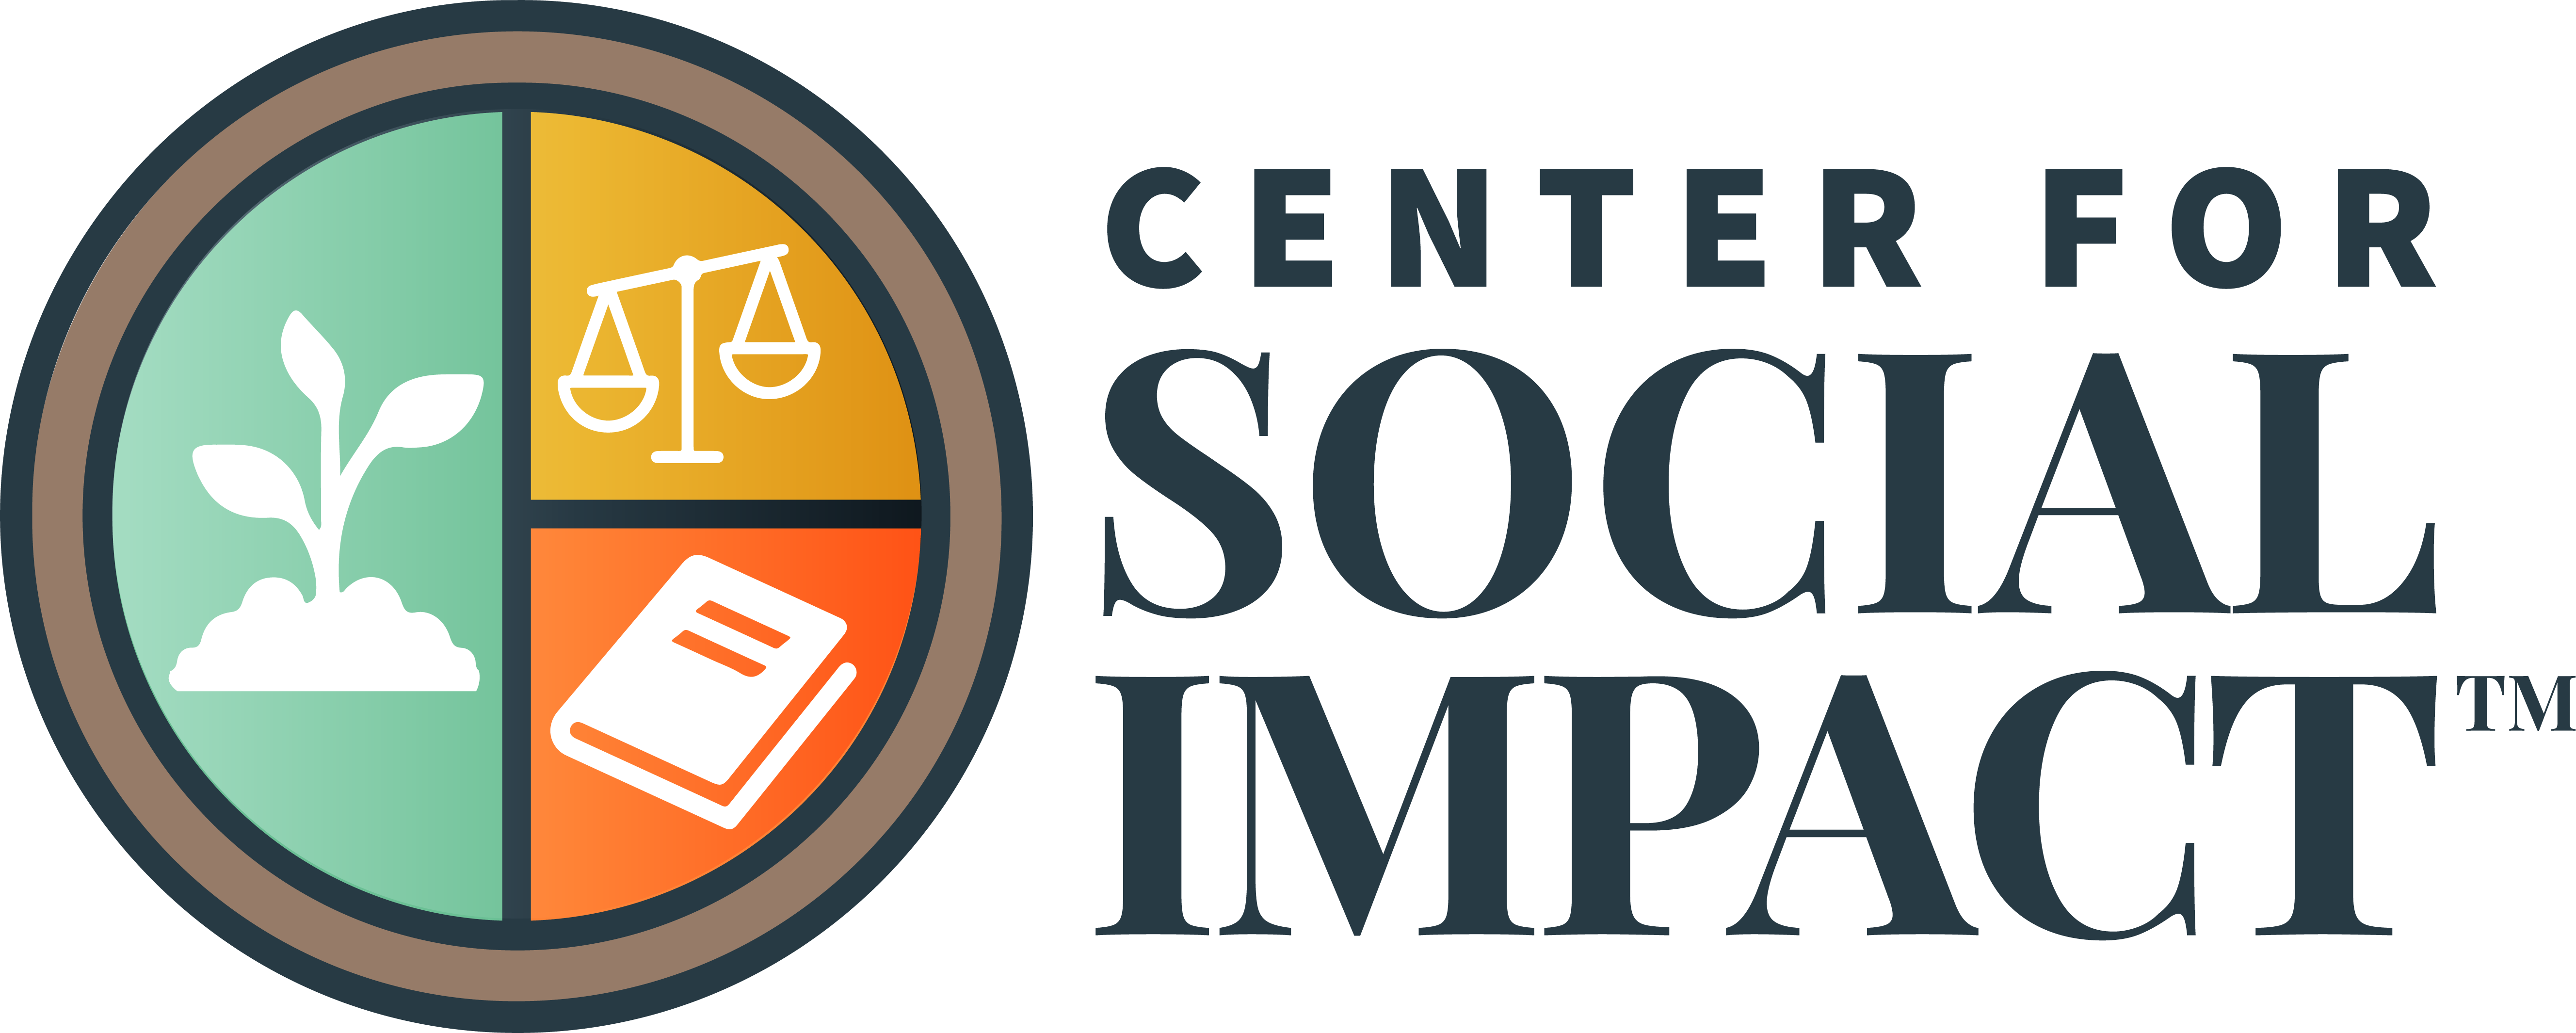 Center for Social Impact